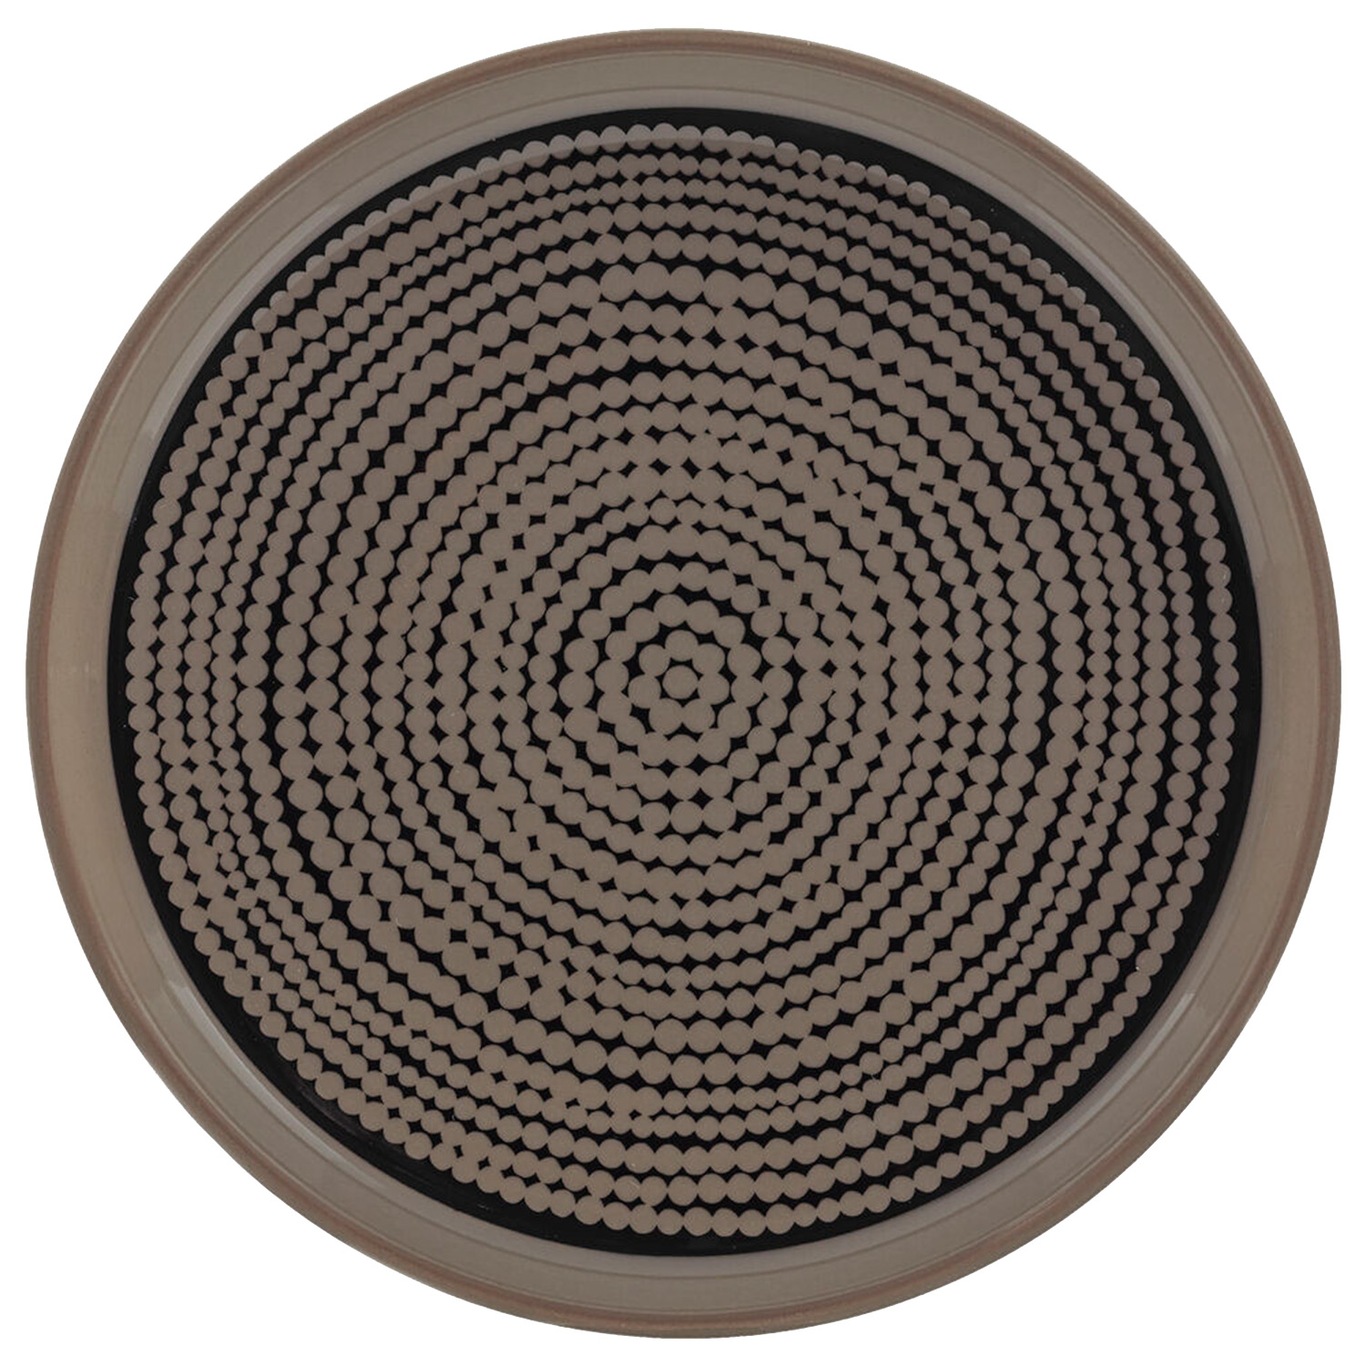 Oiva/Siirtolapuutarha Plate 13,5 cm, Black/Terra